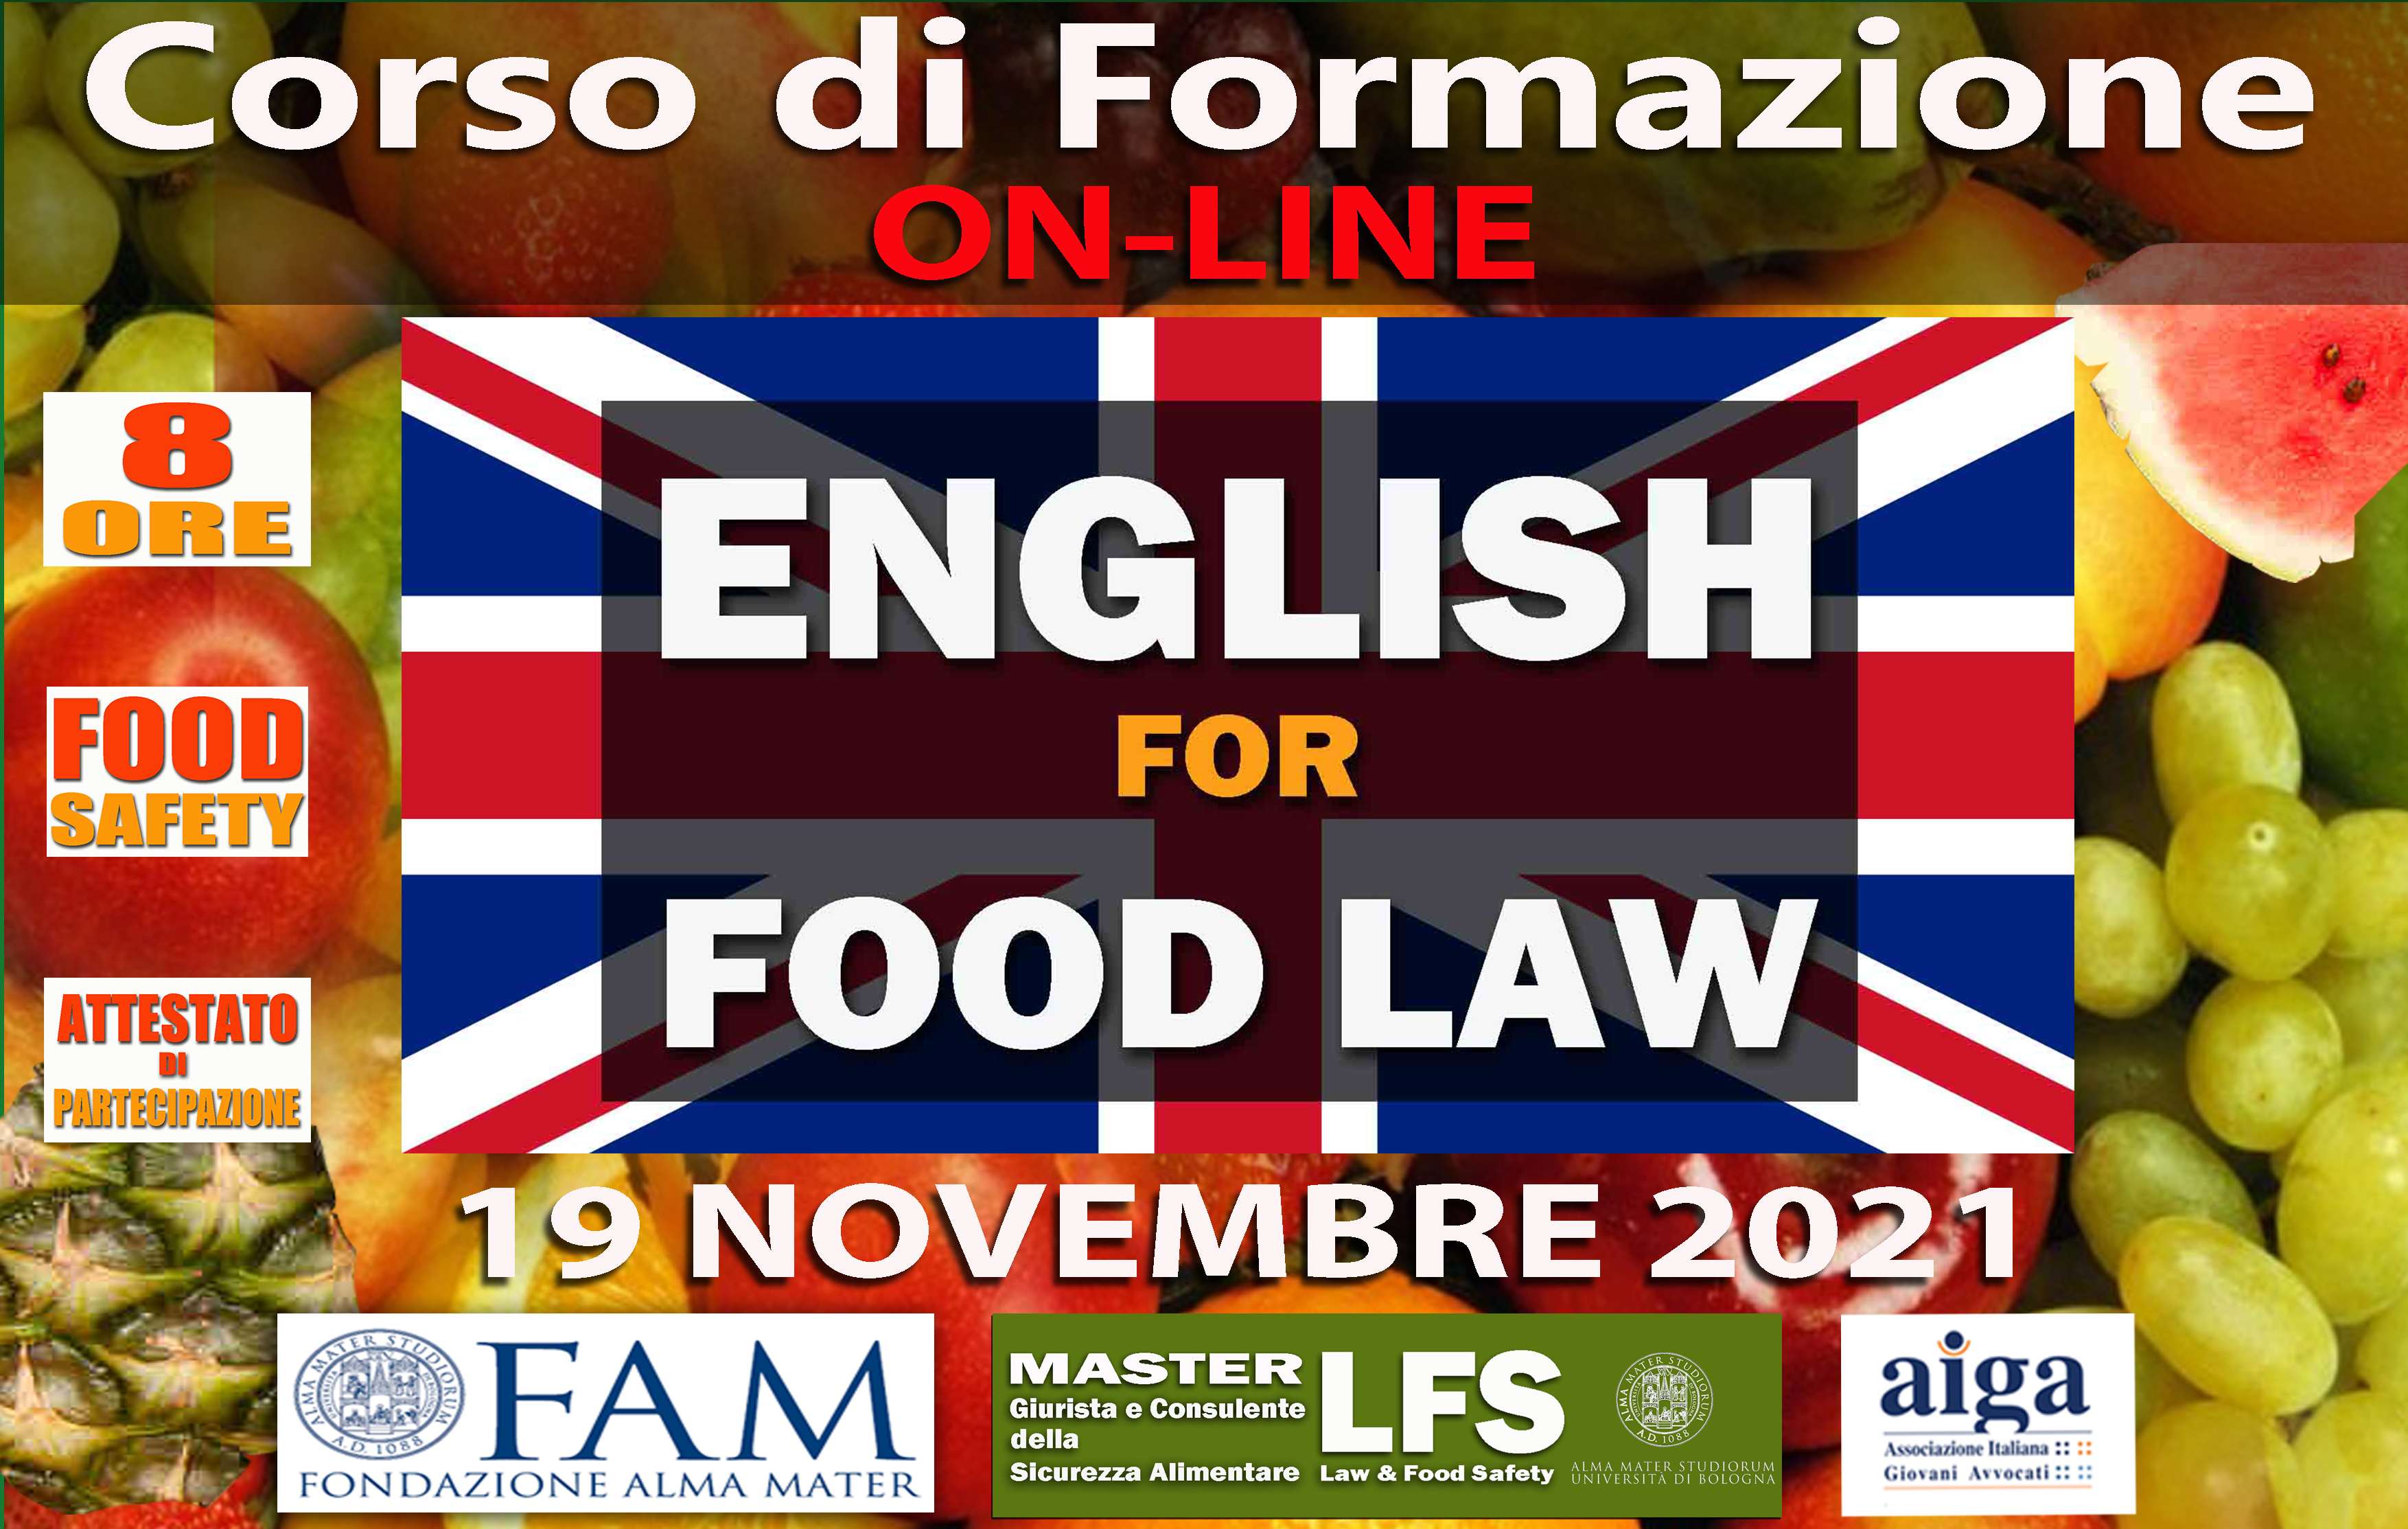 CORSO DI FORMAZIONE ENGLISH FOR FOOD LAW - 19 NOVEMBRE  2021